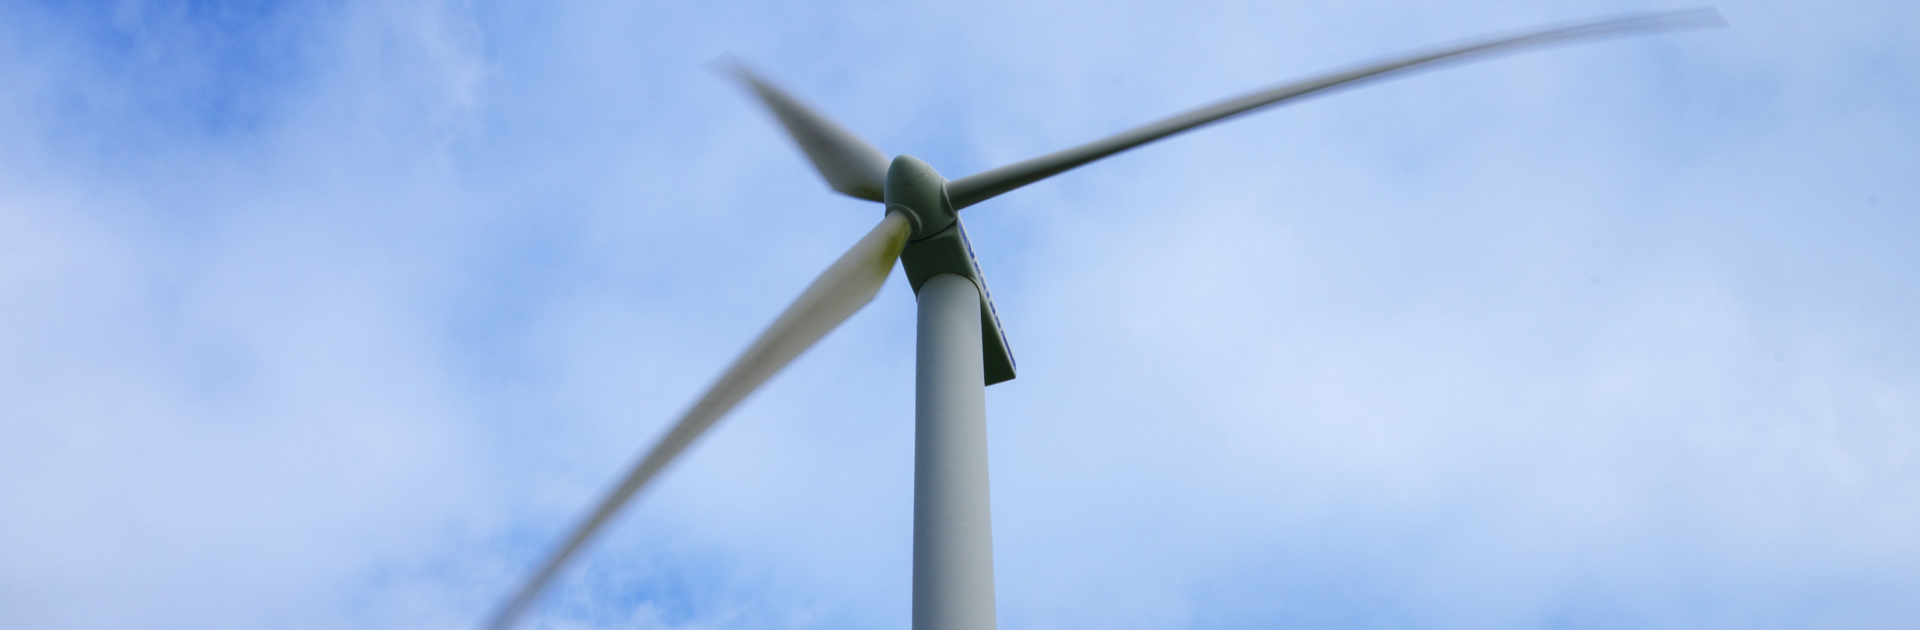 Windturbinebepalingen na inwerkingtreding Omgevingswet: doorpakken invoering landelijke normen nodig 